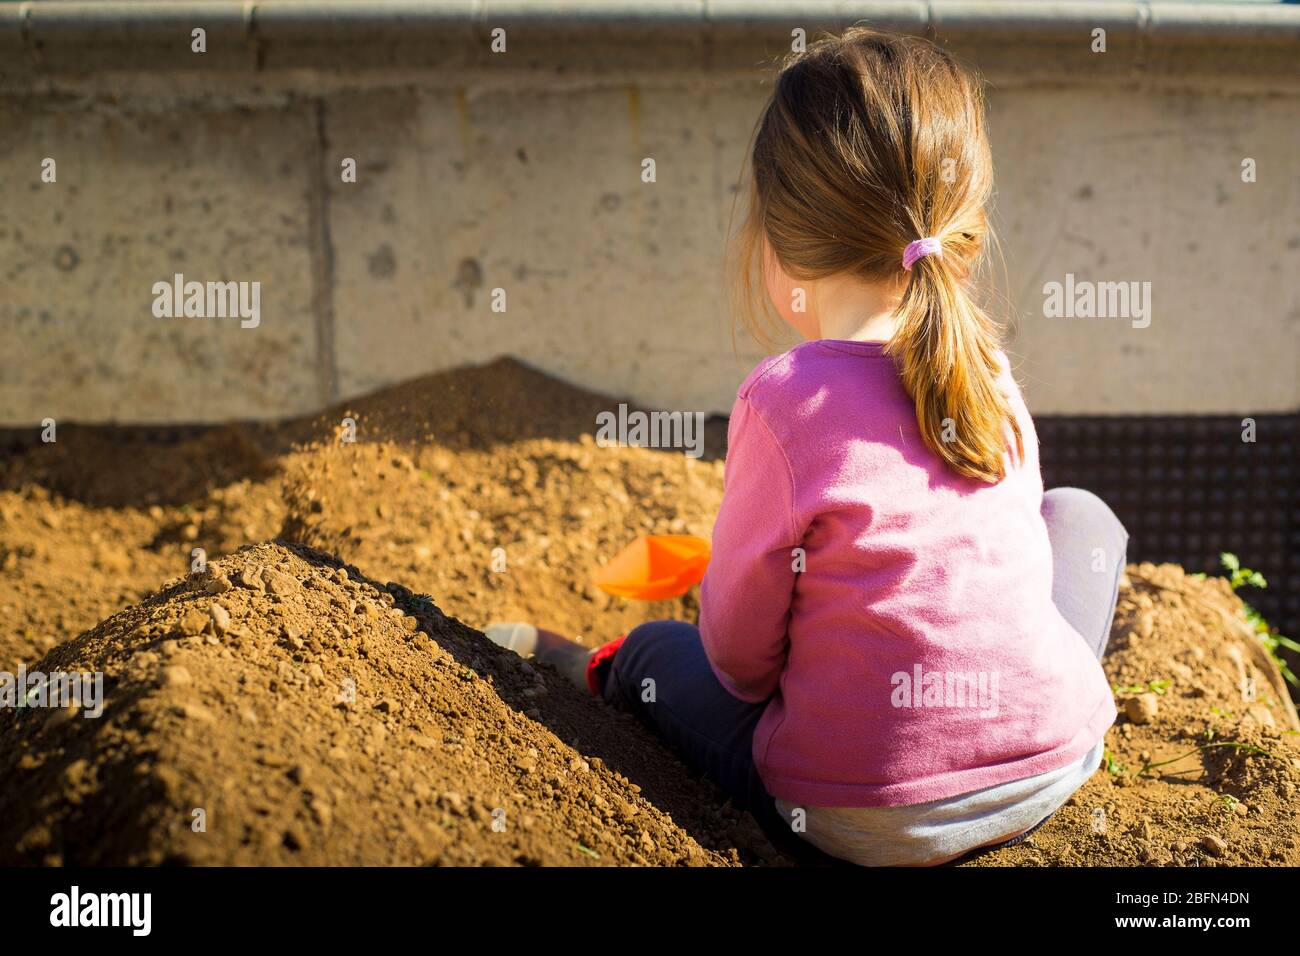 Kleines Mädchen, das während der Blockade der COVID-19-Pandemie mit einer Schaufel im Garten Erde gräbt. Outdoor-Aktivität Idee für Kinder während des Aufenthalts zu Hause. Stockfoto